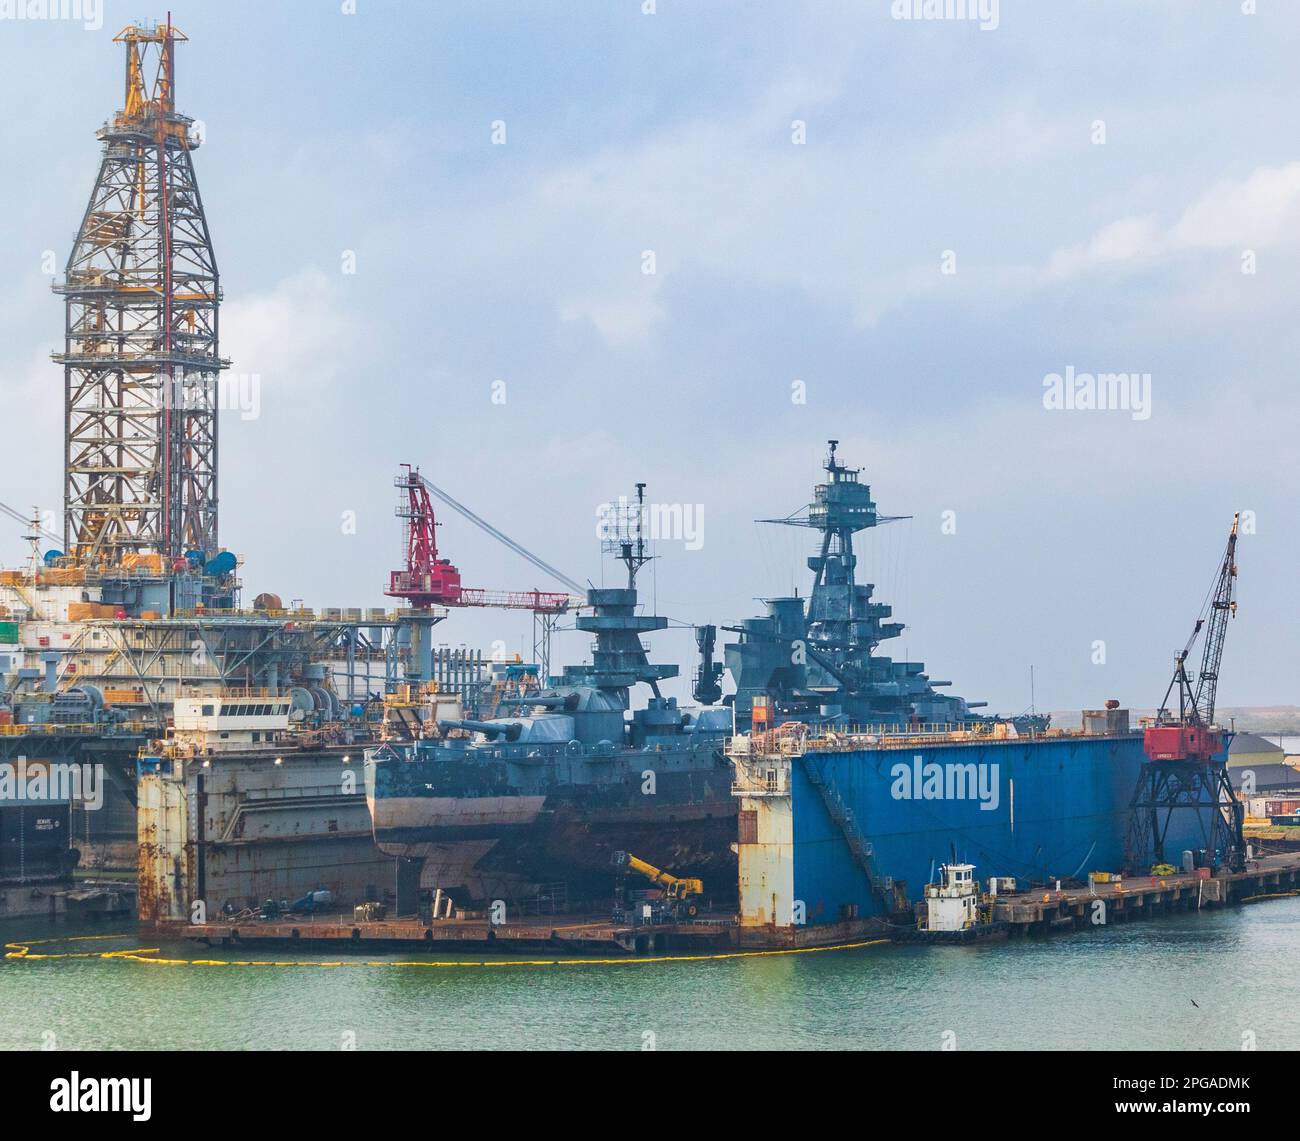 Vista dalla nave da crociera Ruby Princess mentre parte da Galveston. Nave da guerra USS Texas in riparazione presso le strutture di riparazione navale di Galveston Texas. Foto Stock